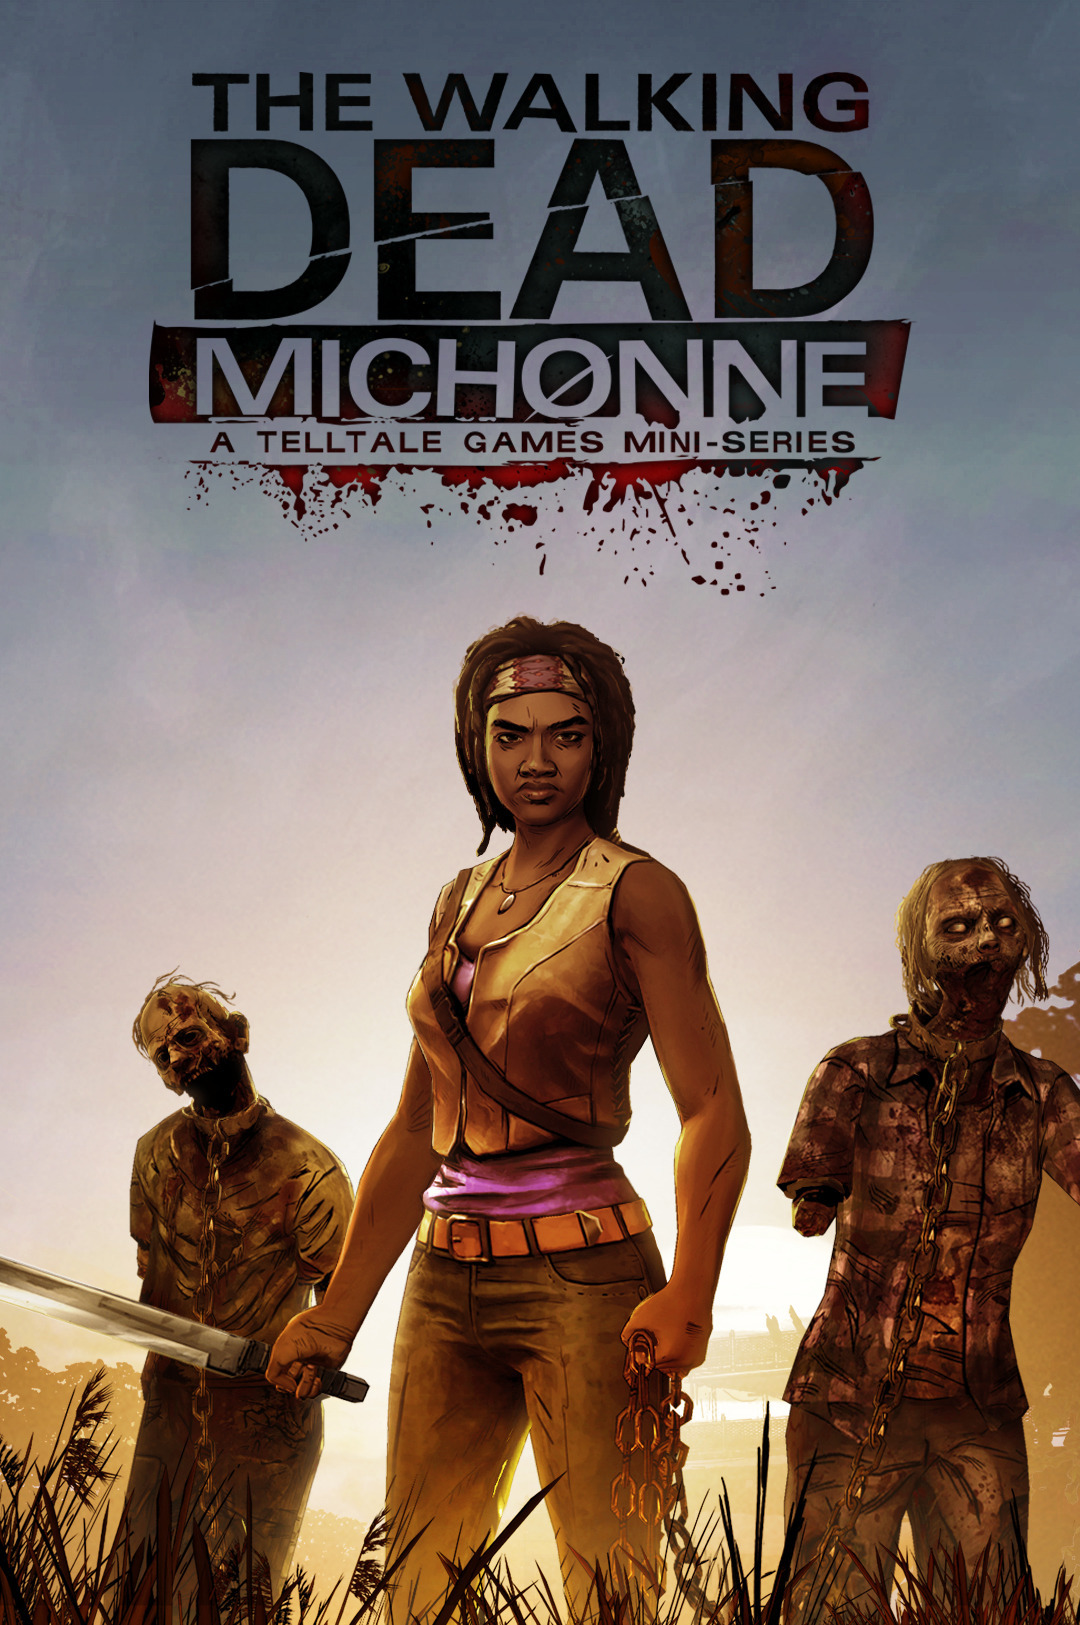 The Walking Dead: Michonne #15